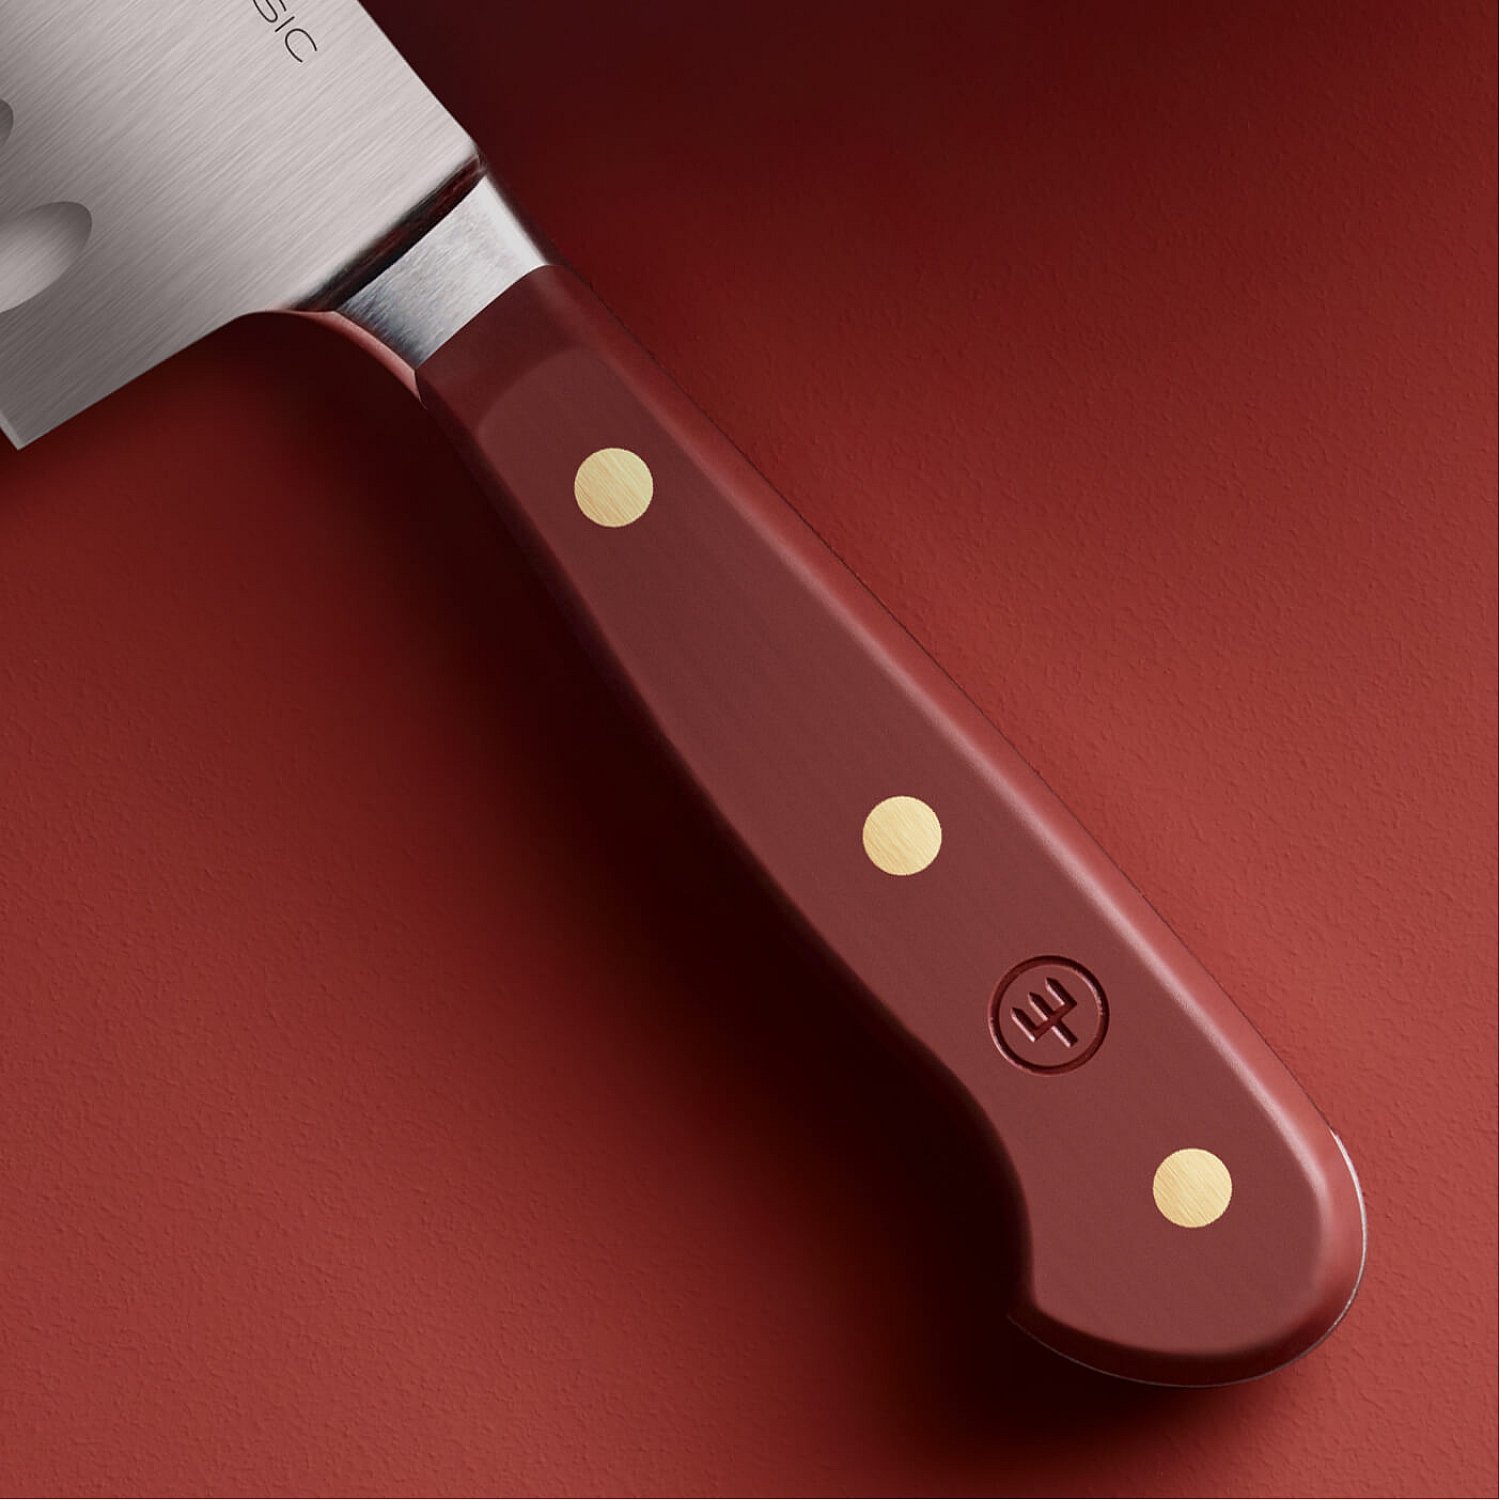 Chef's knife CLASSIC COLOUR 20 cm, tasty sumac, Wüsthof 